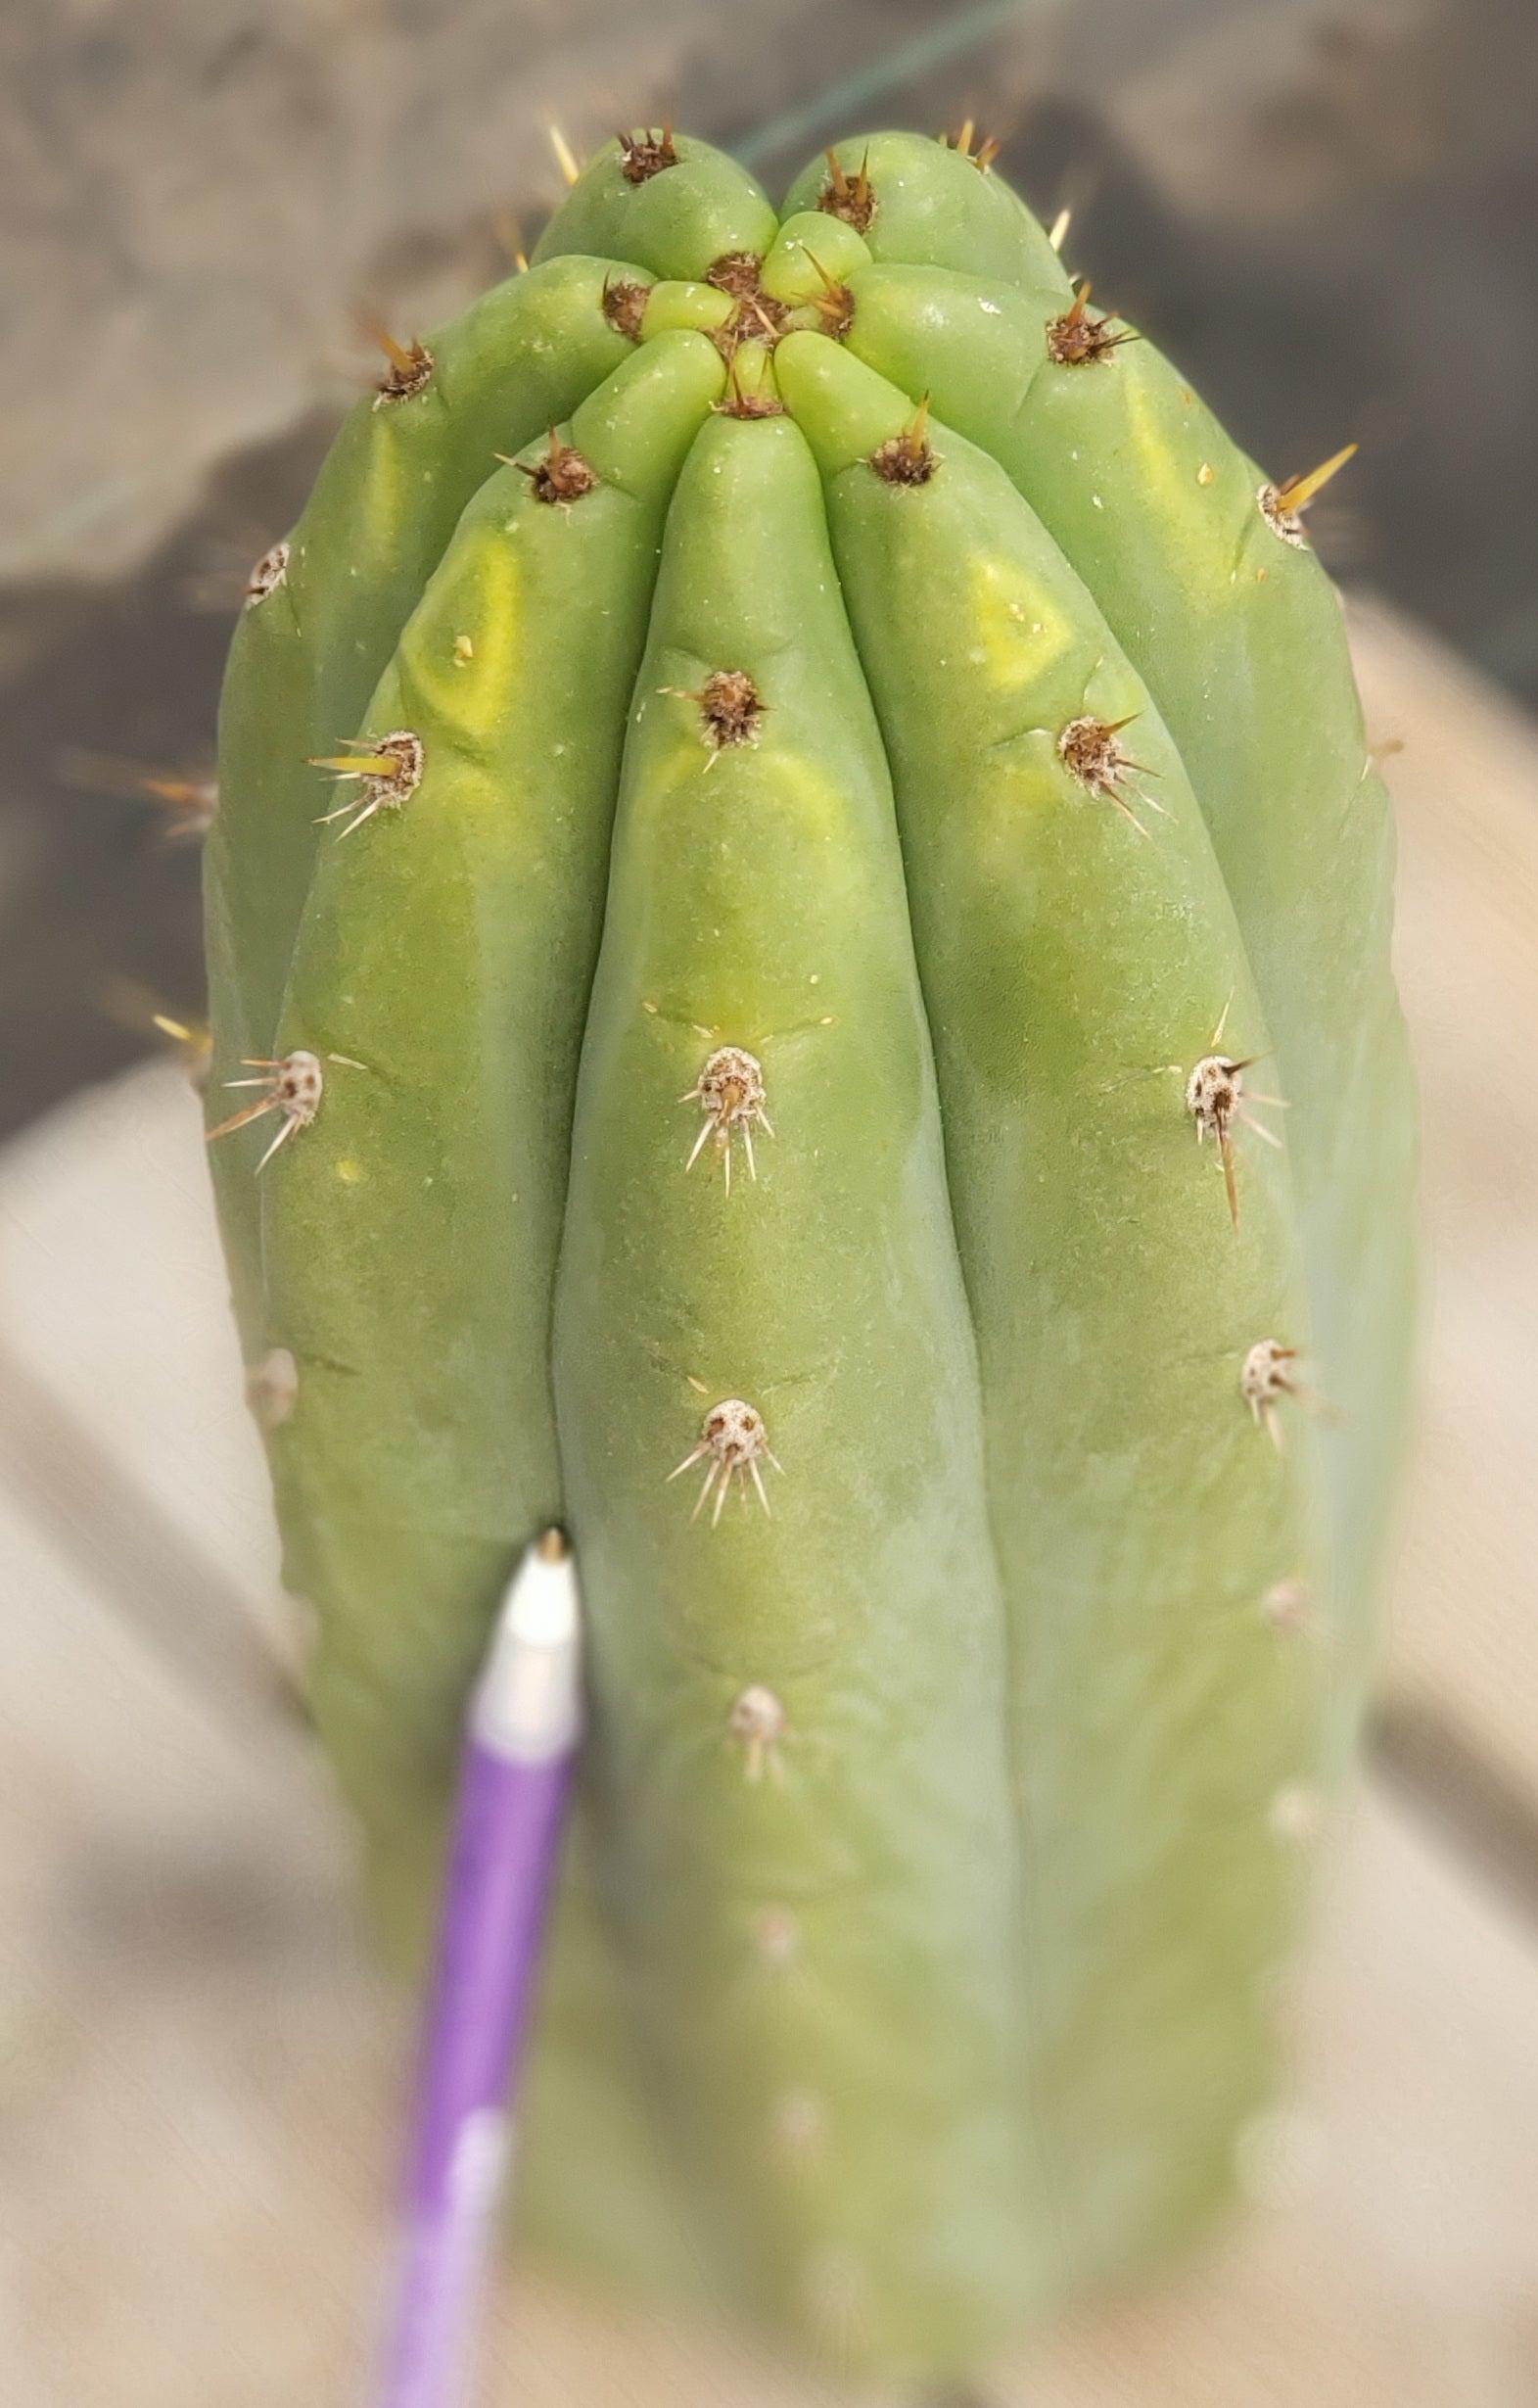 #EC196 EXACT trichocereus Peruvianus "Rancho" Ornamental Cactus Cutting 9.5"-Cactus - Large - Exact-The Succulent Source